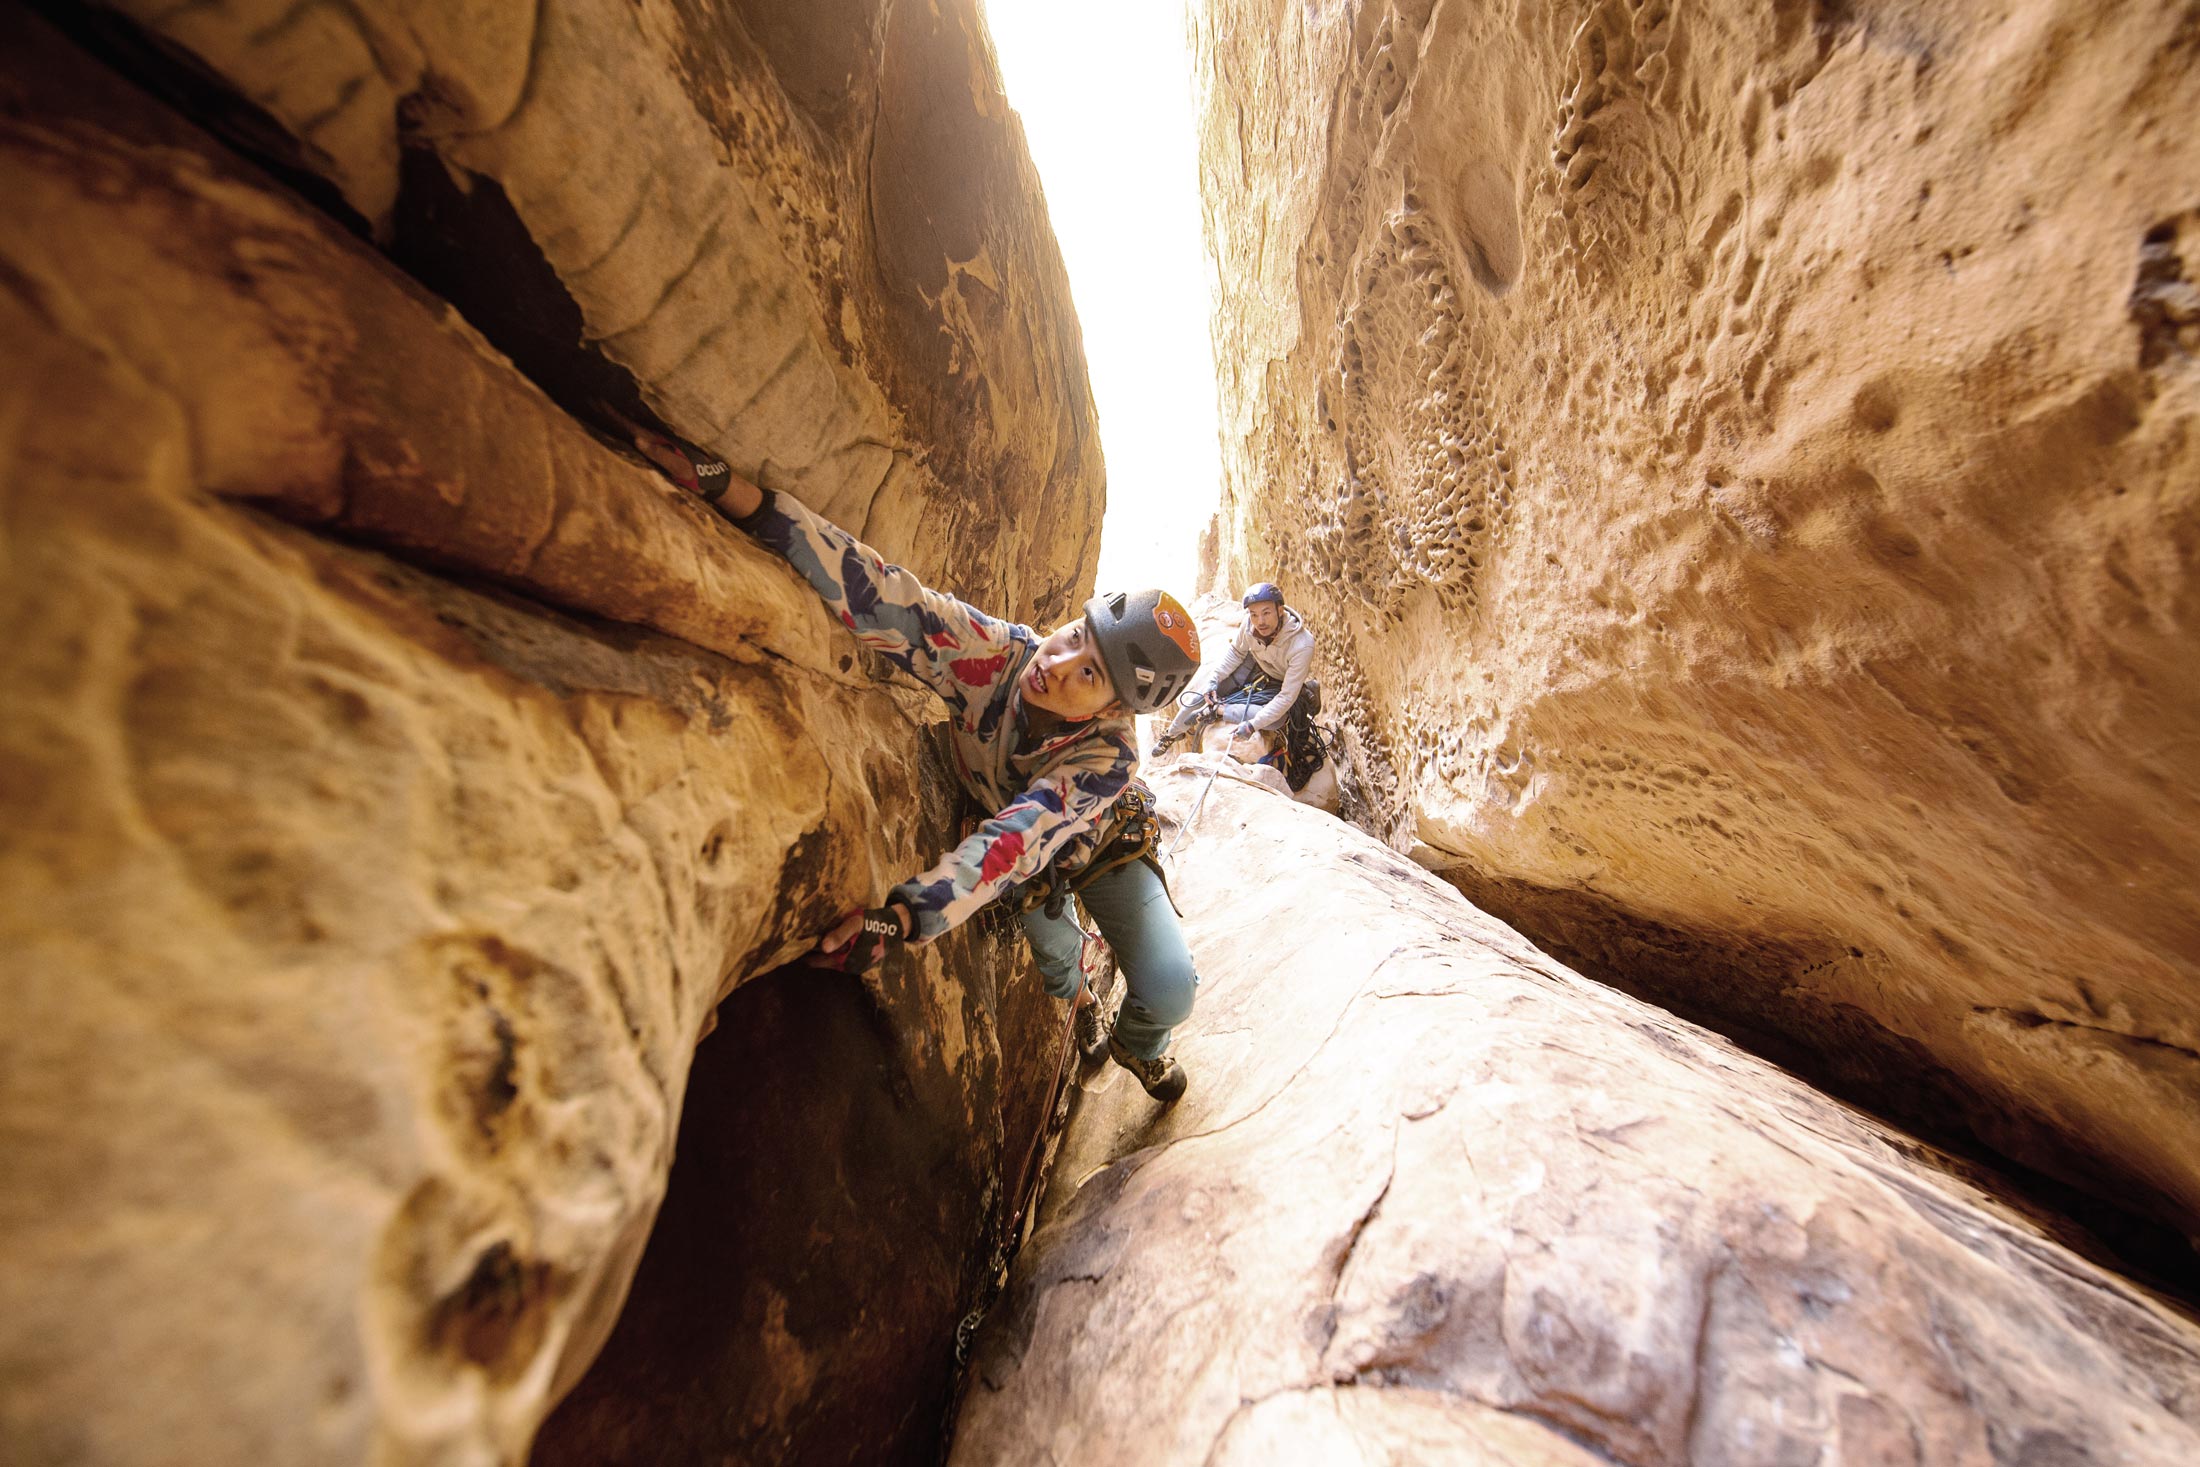 Julie Tsai in Red Rock Canyon.